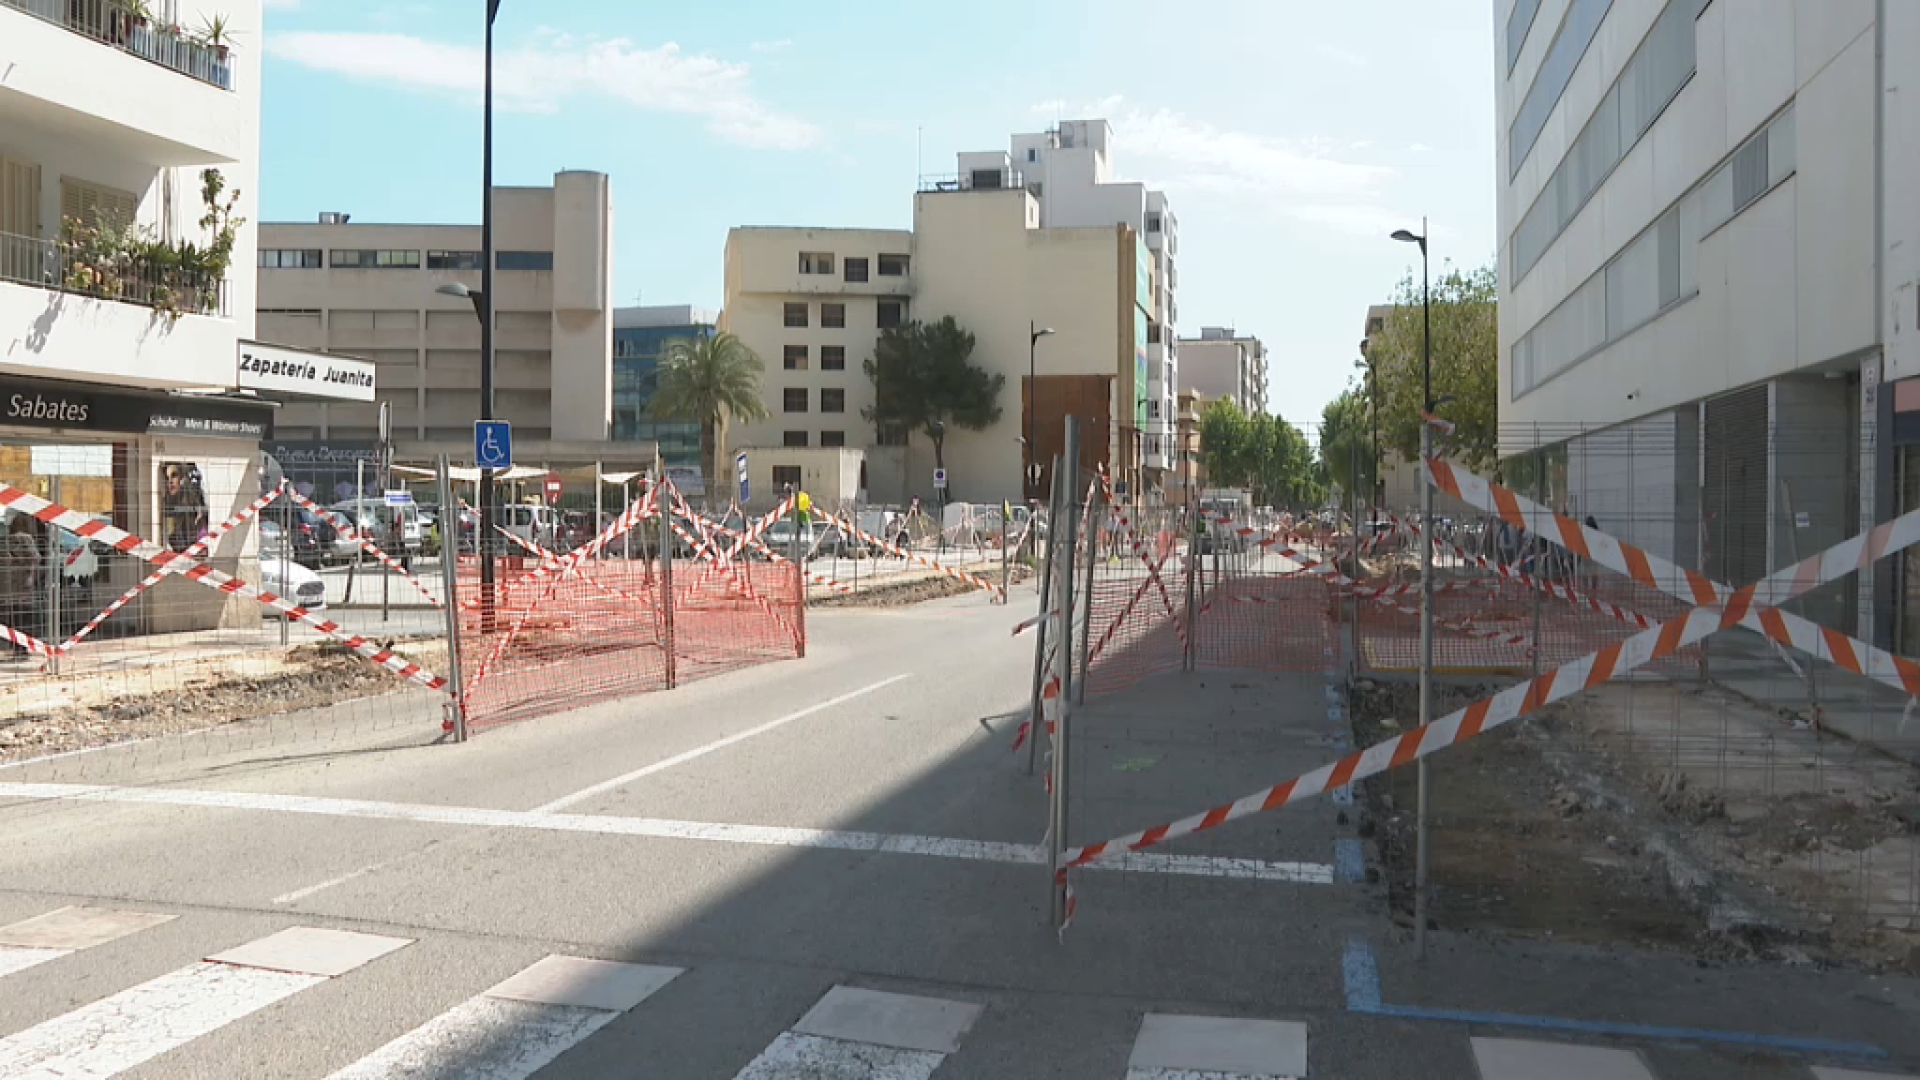 El carrer Ricardo General Ortega tindrà més arbres i un carril bici